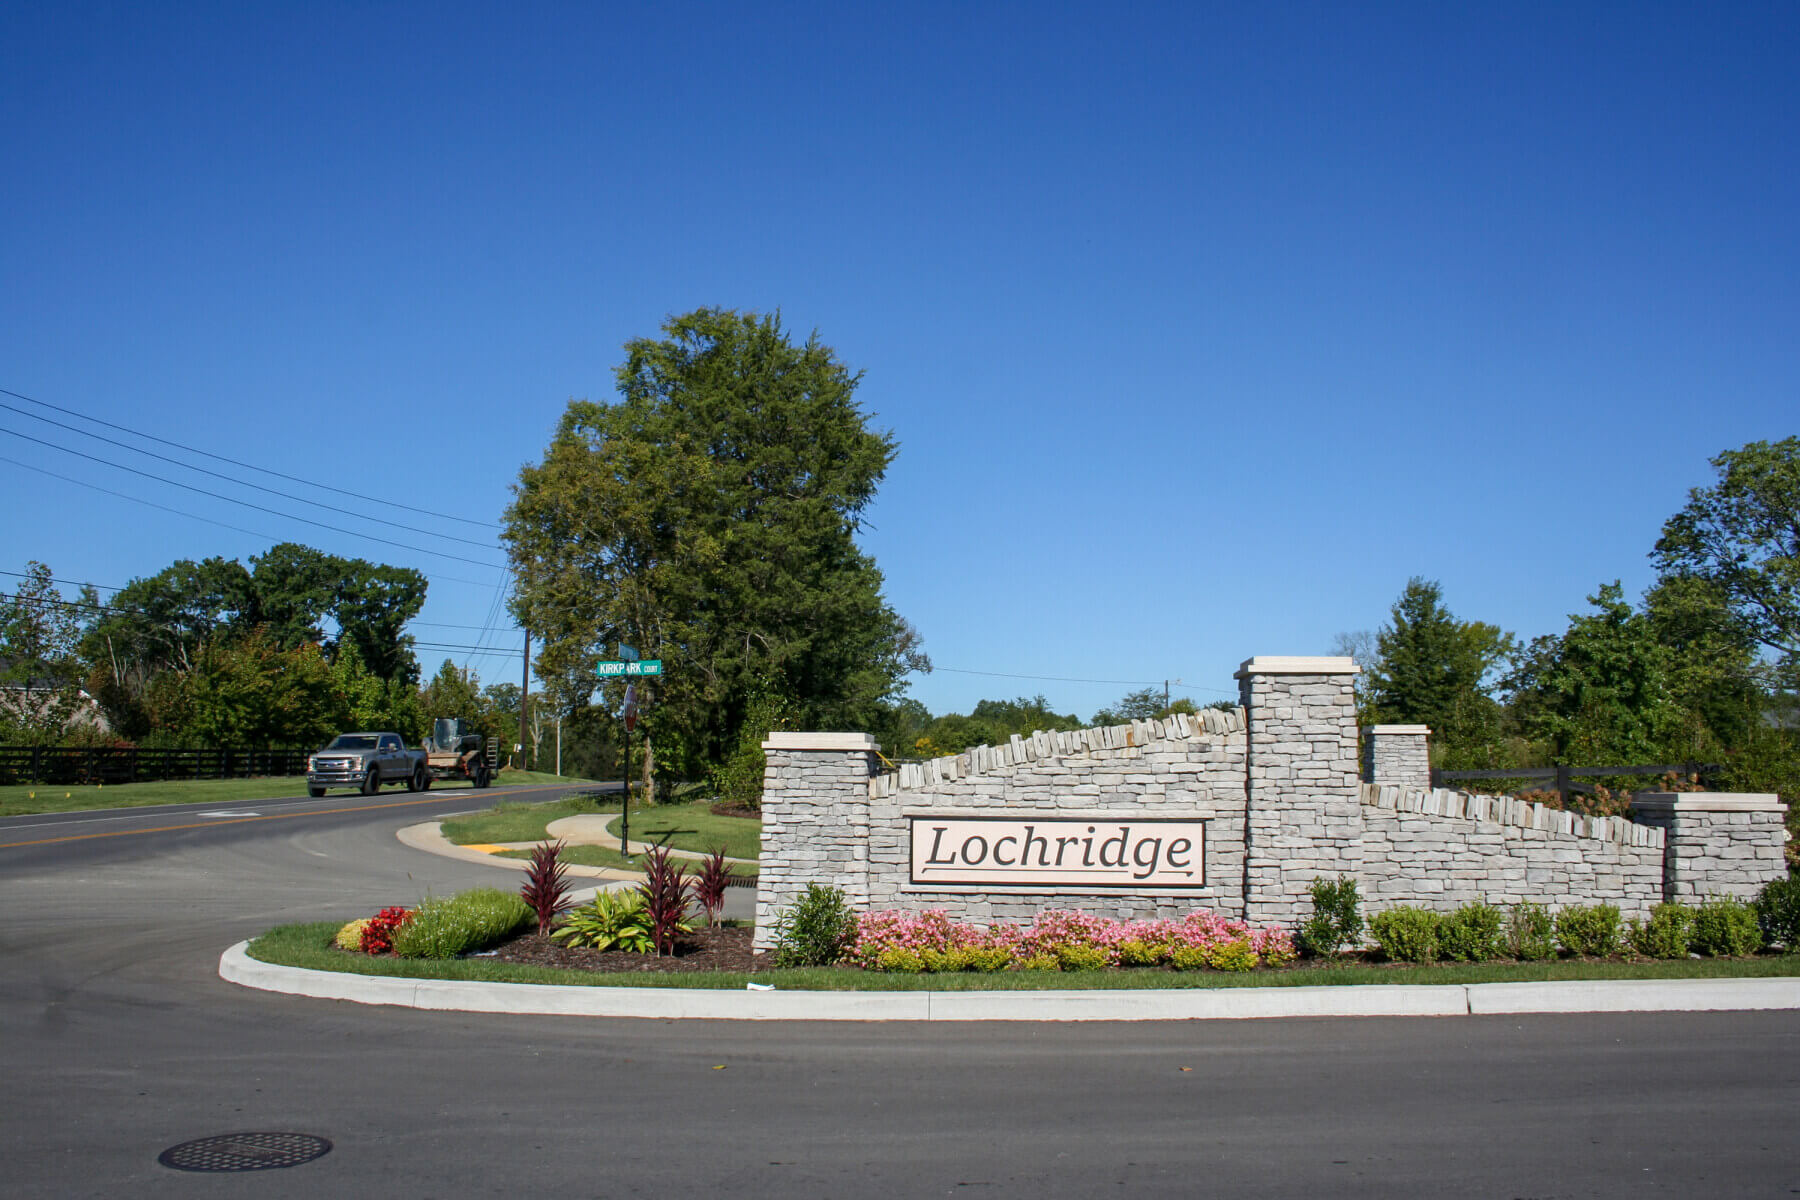 Lochridge sign in the subdivision